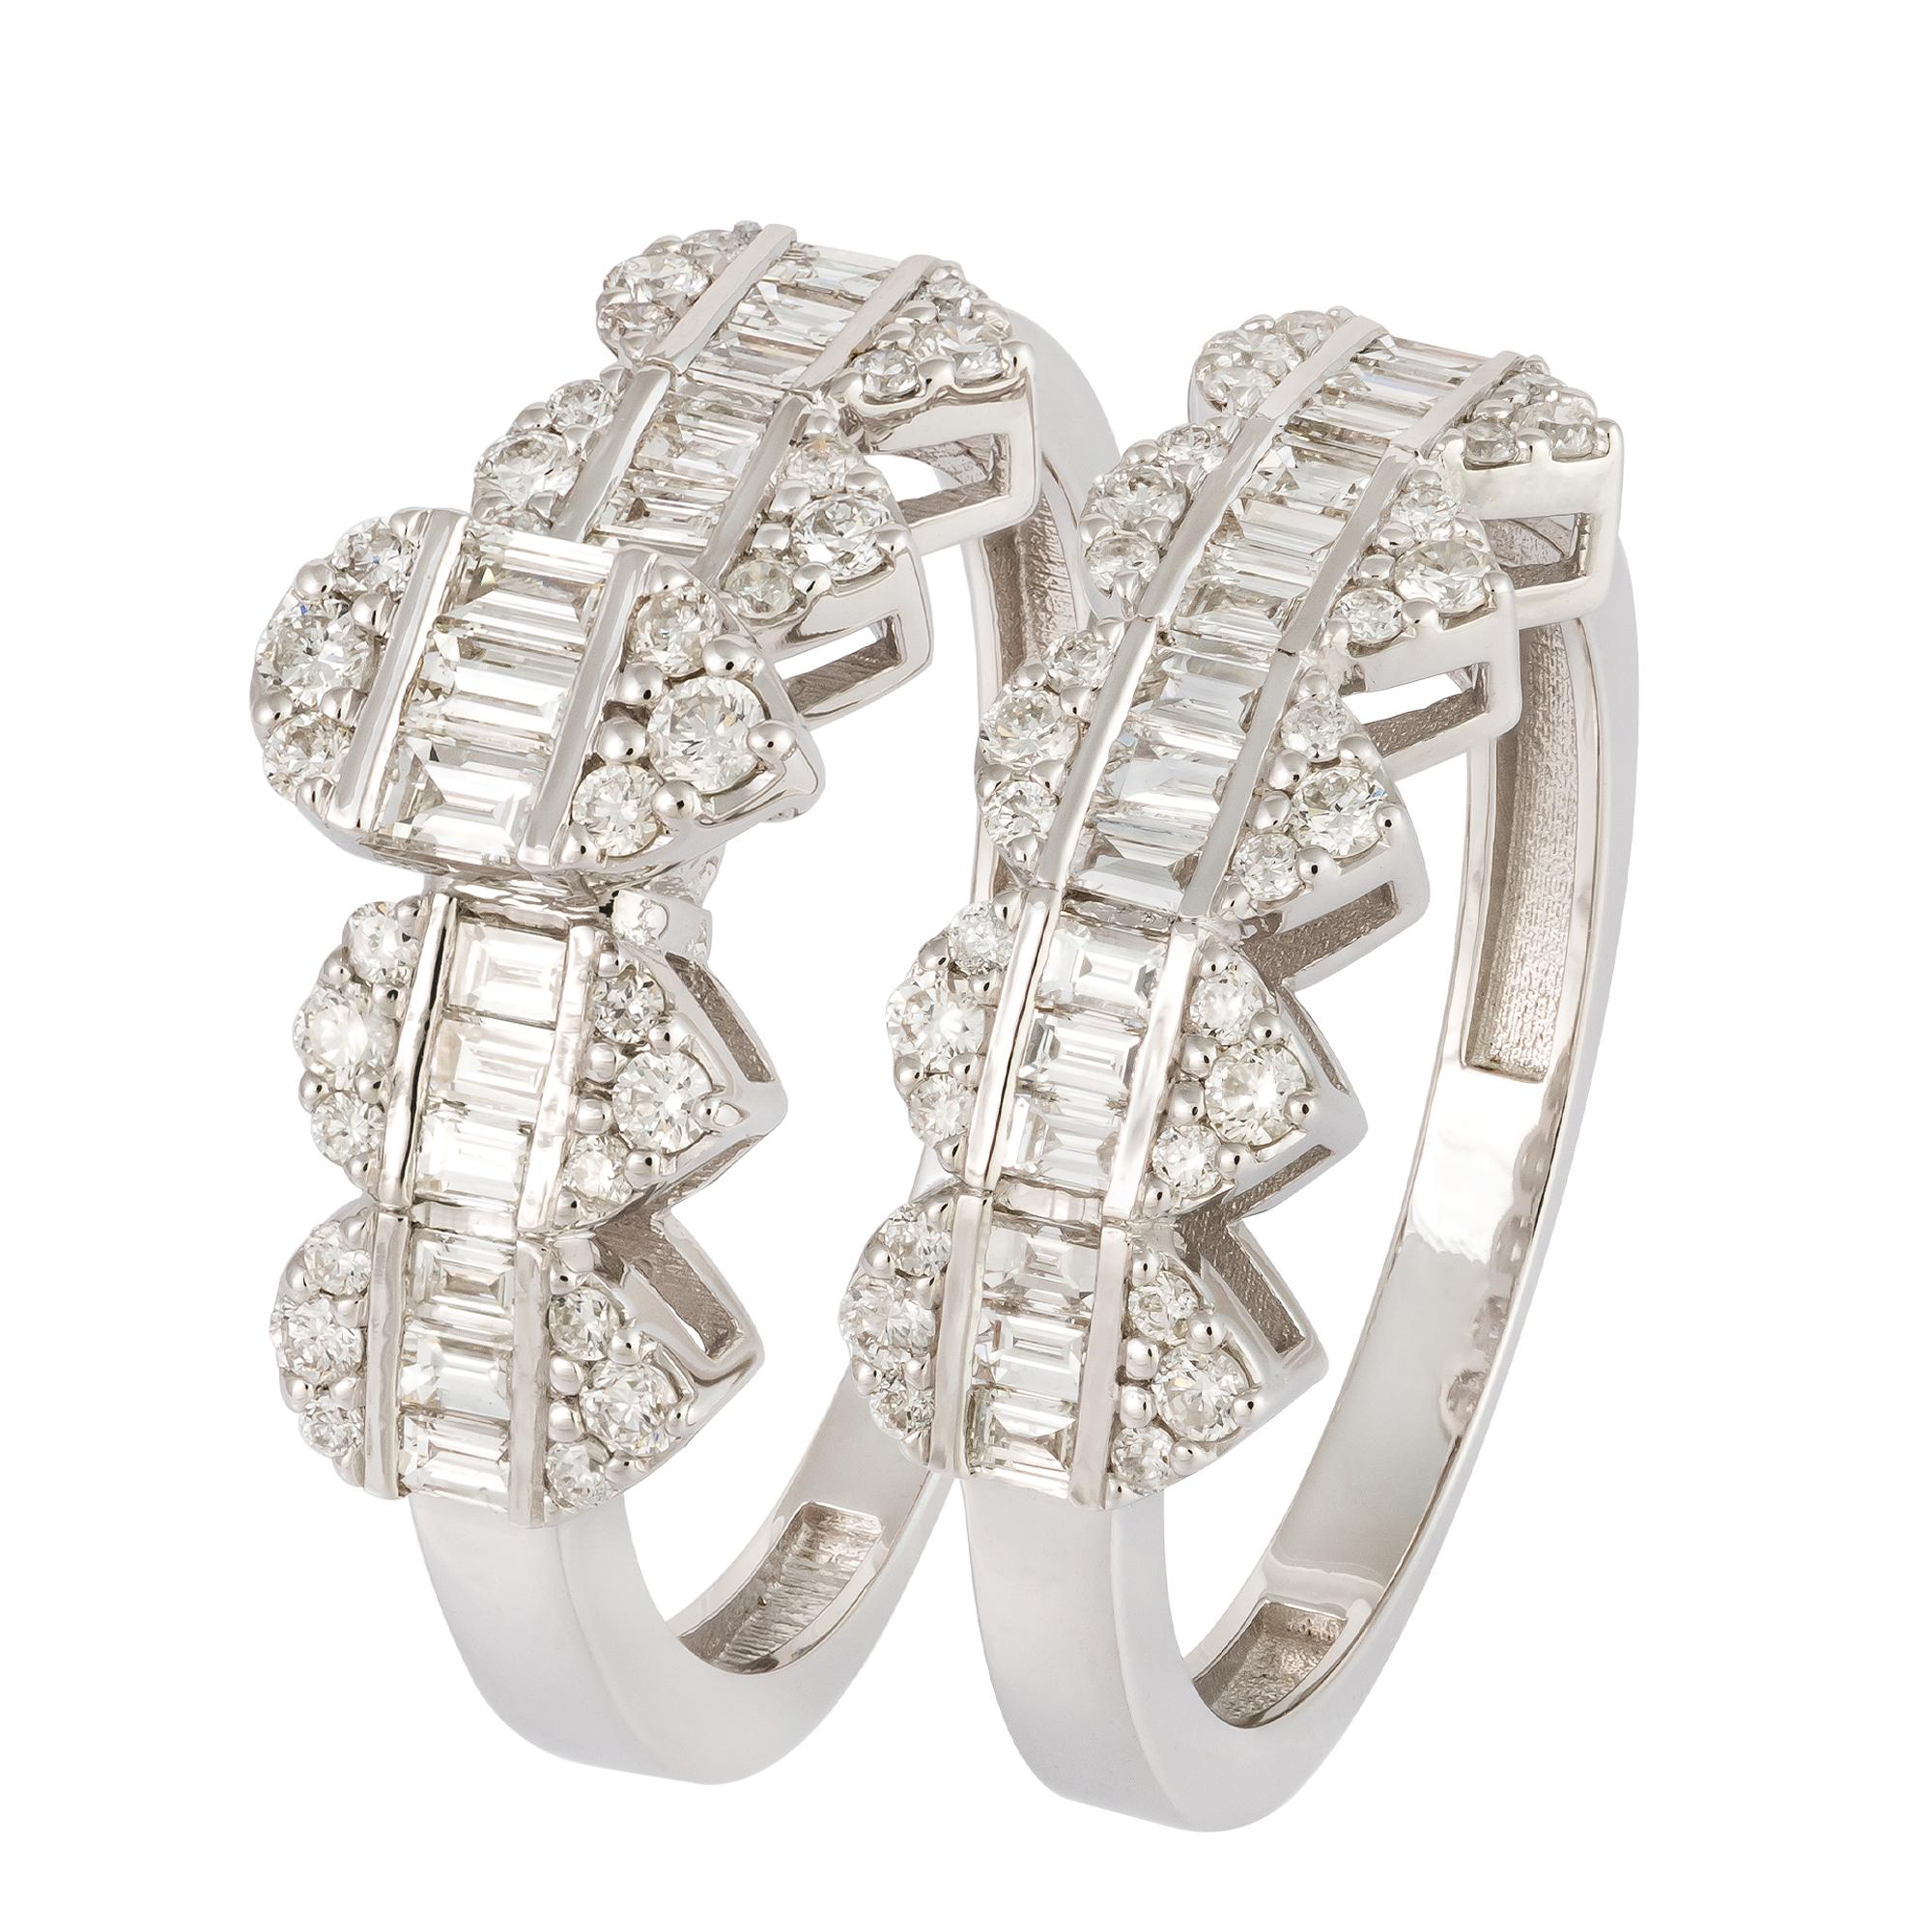 For Sale:  Stunning White 18K Gold White Diamond Ring For Her 4